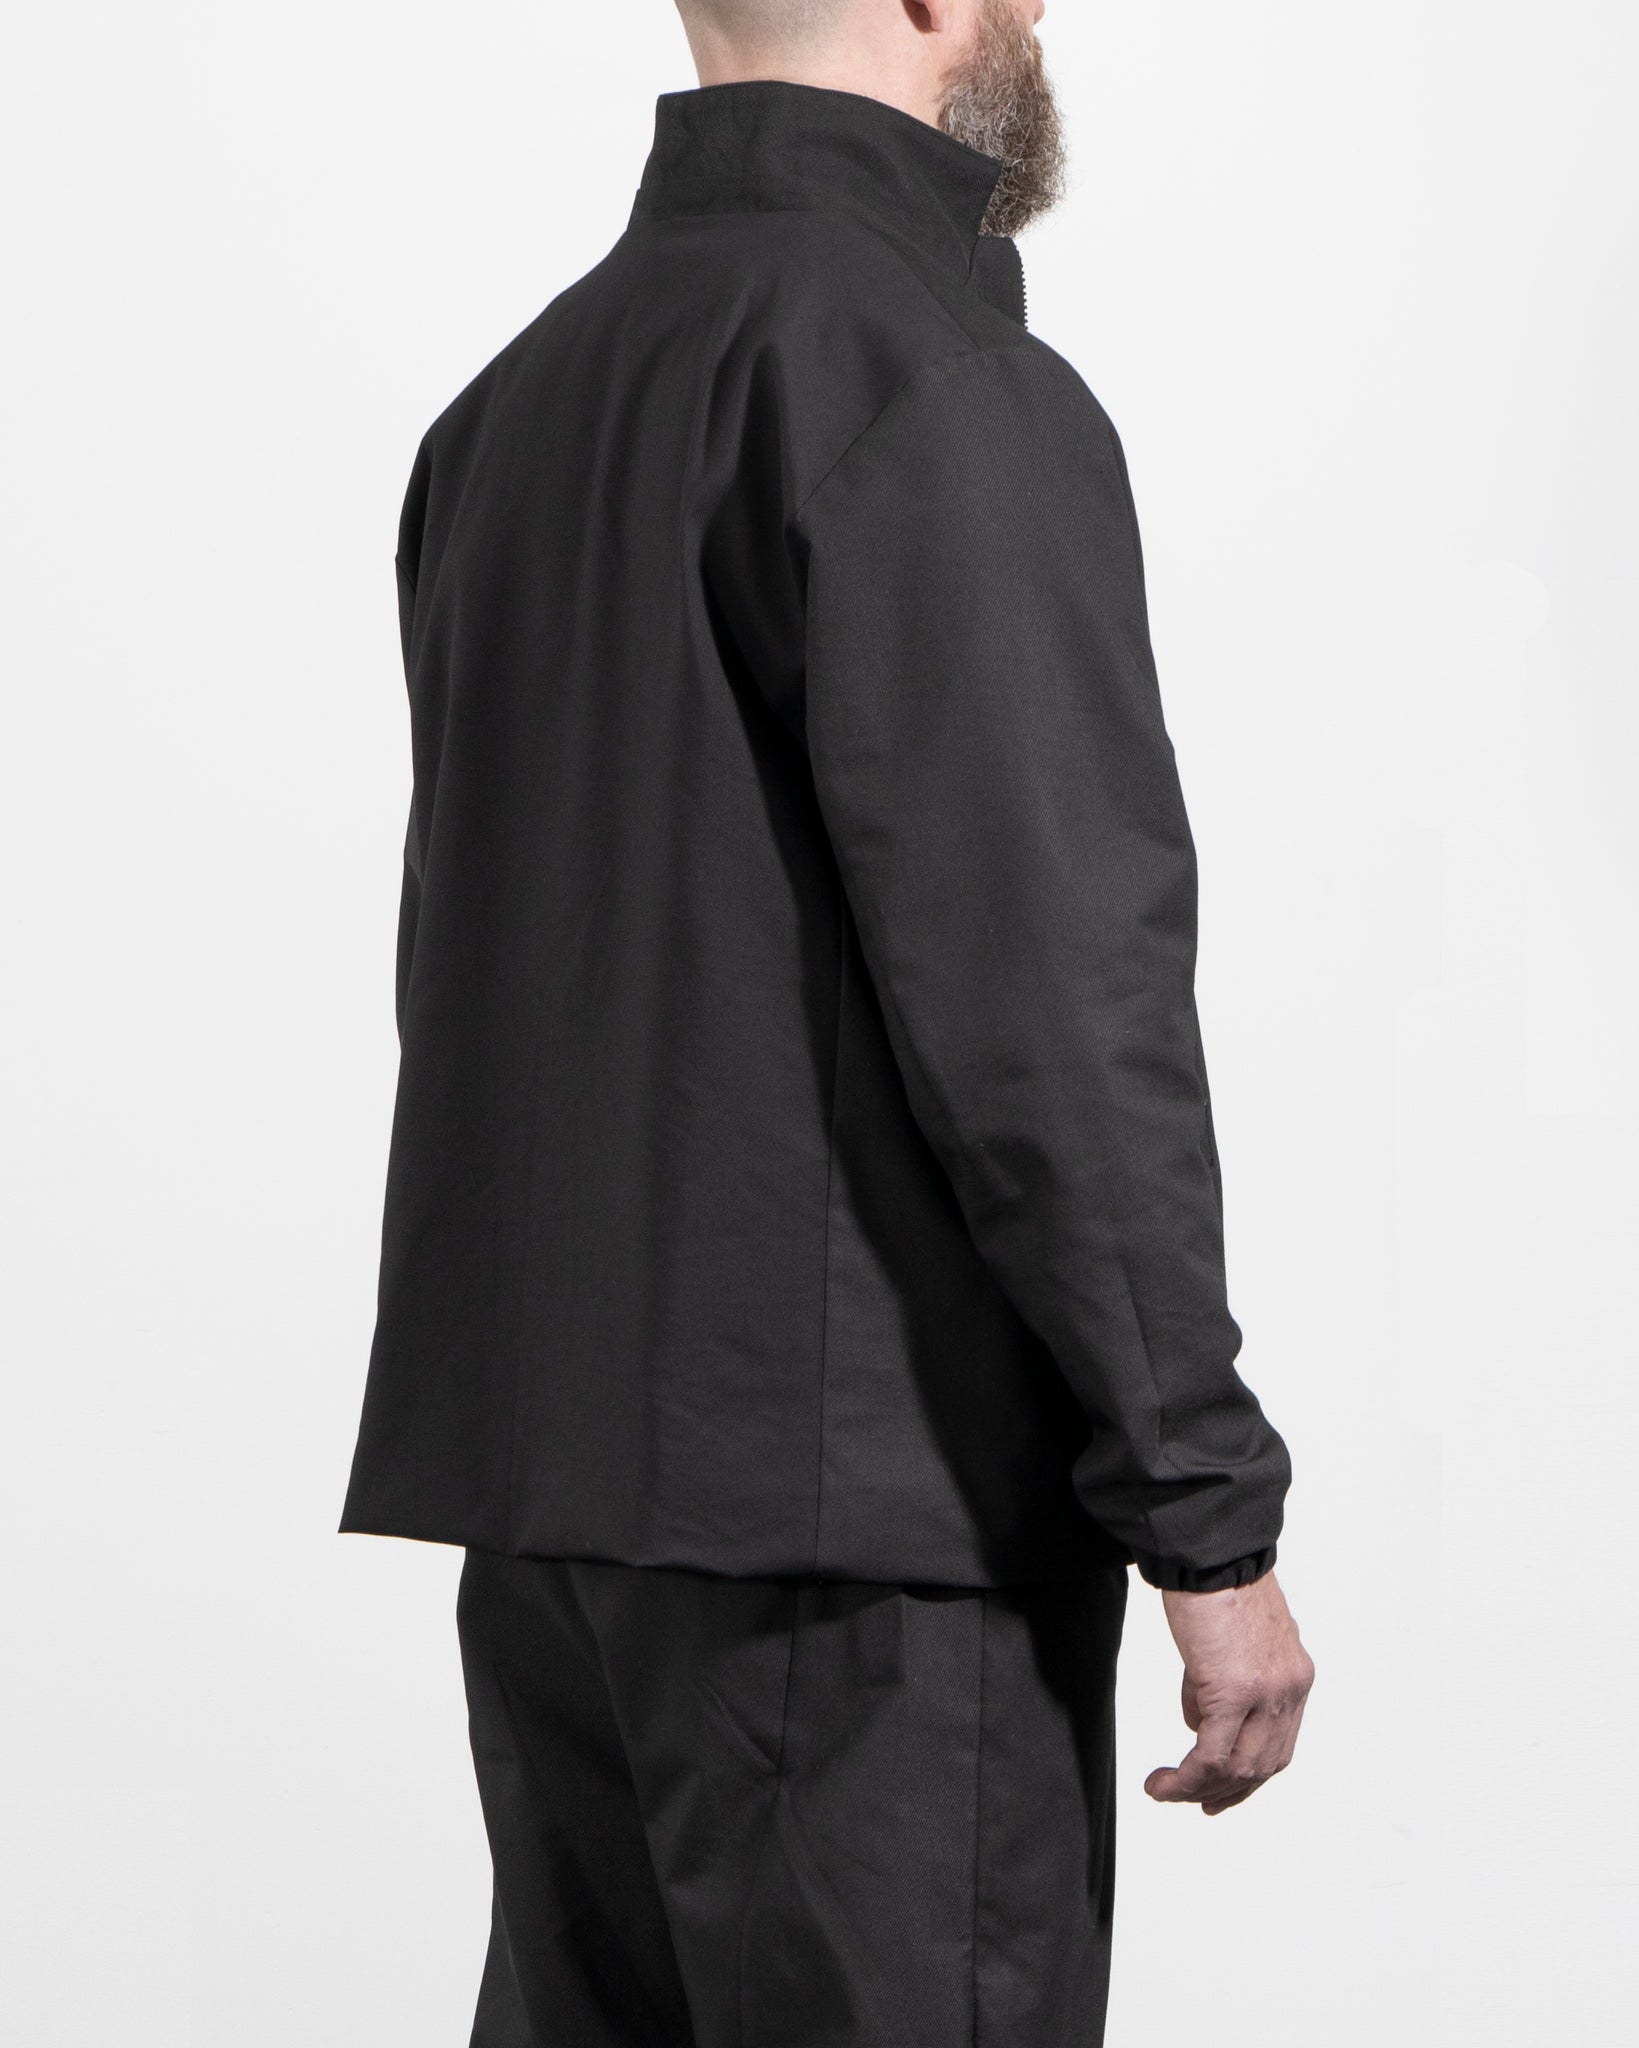 Zipped jacket - C12M